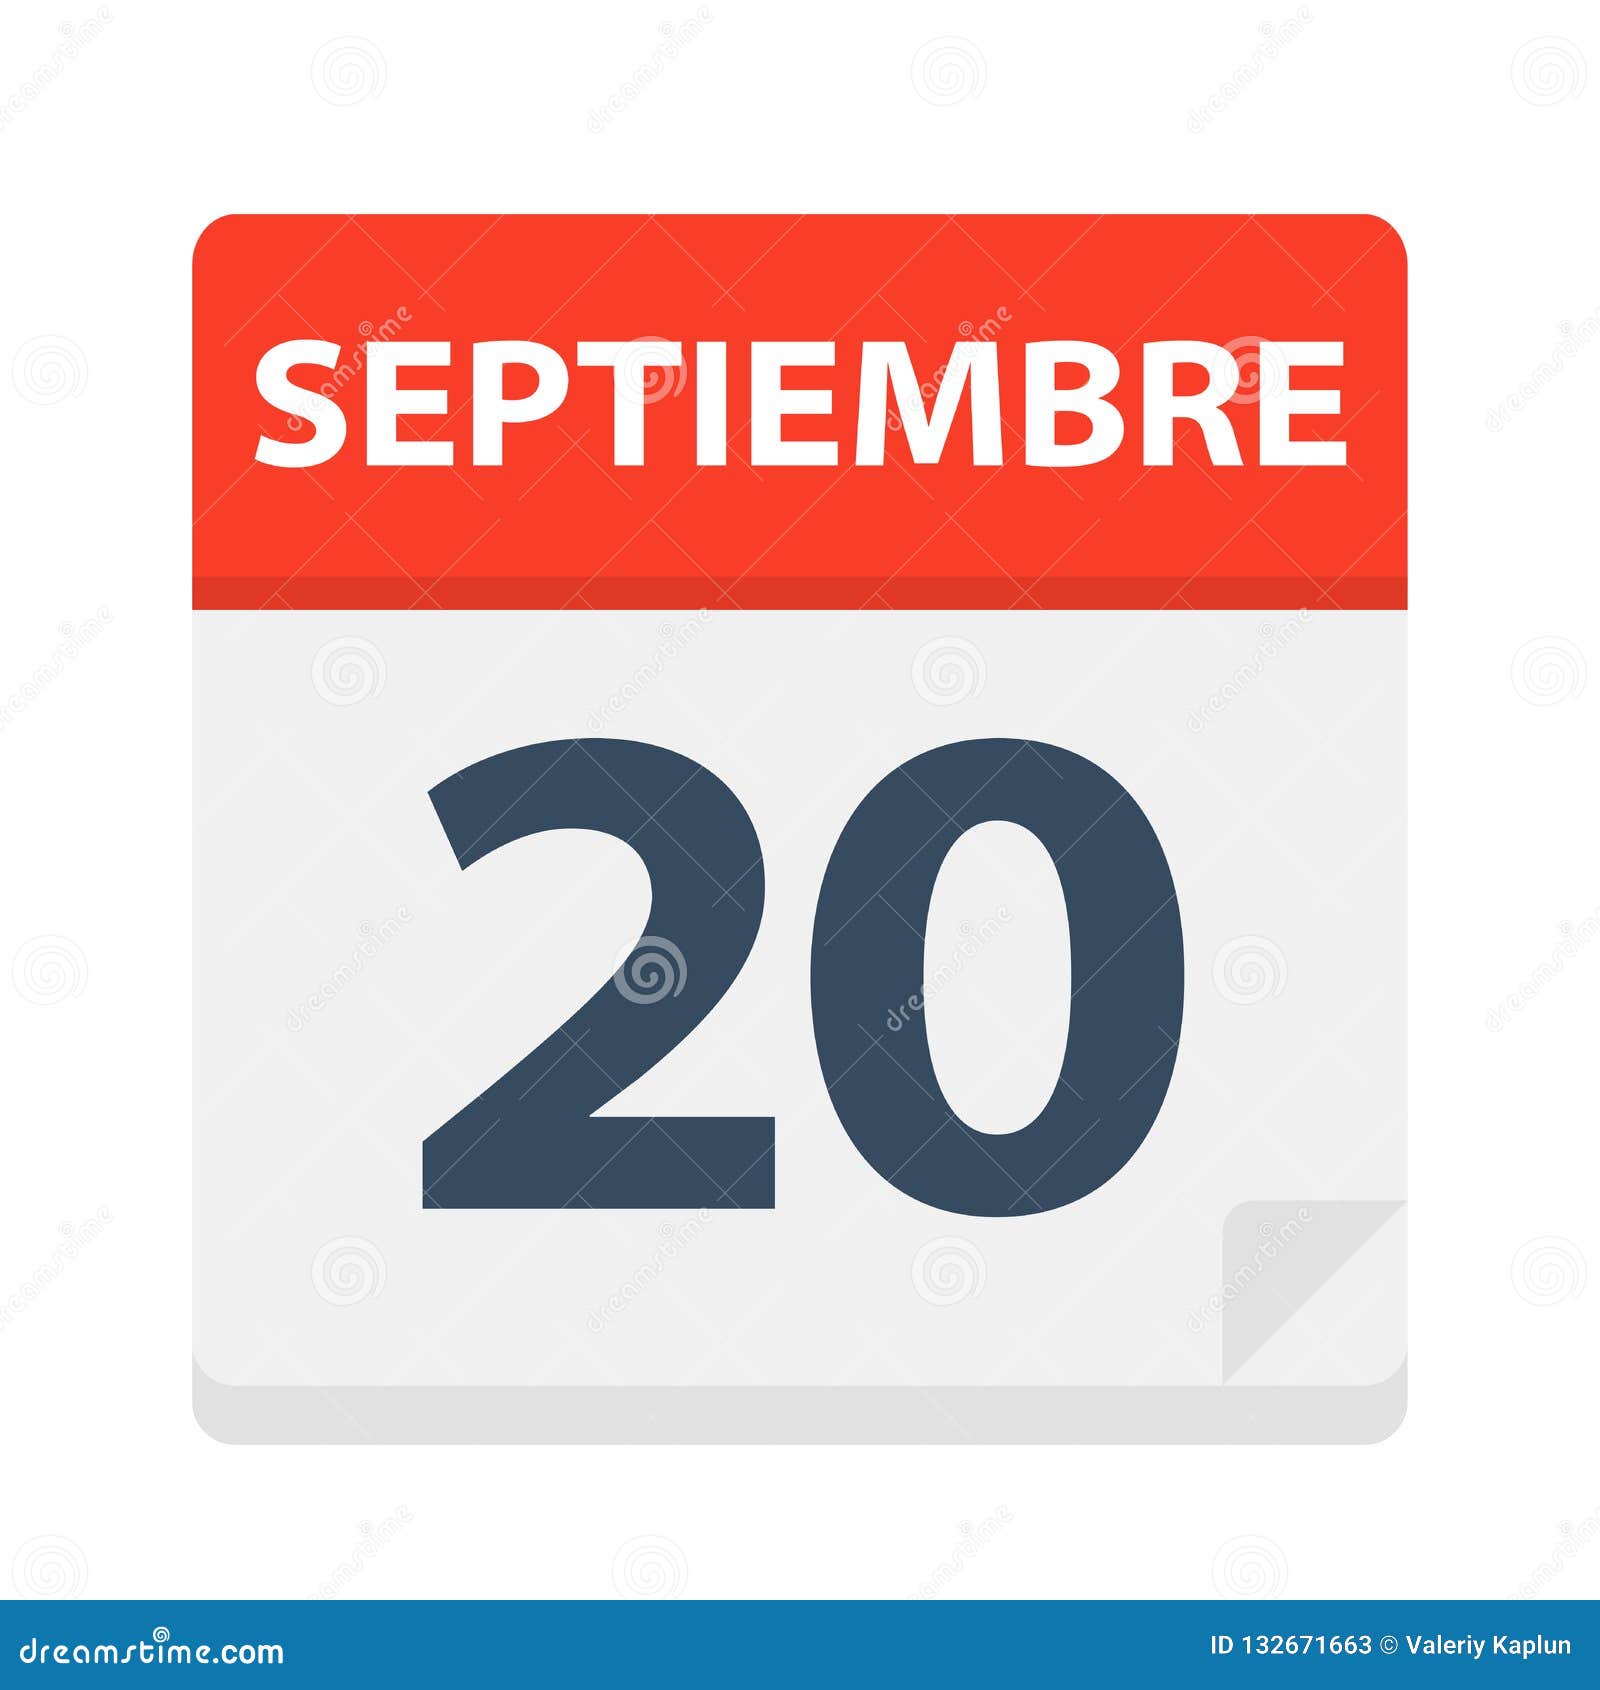 septiembre 20 - calendar icon - september 20.   of spanish calendar leaf